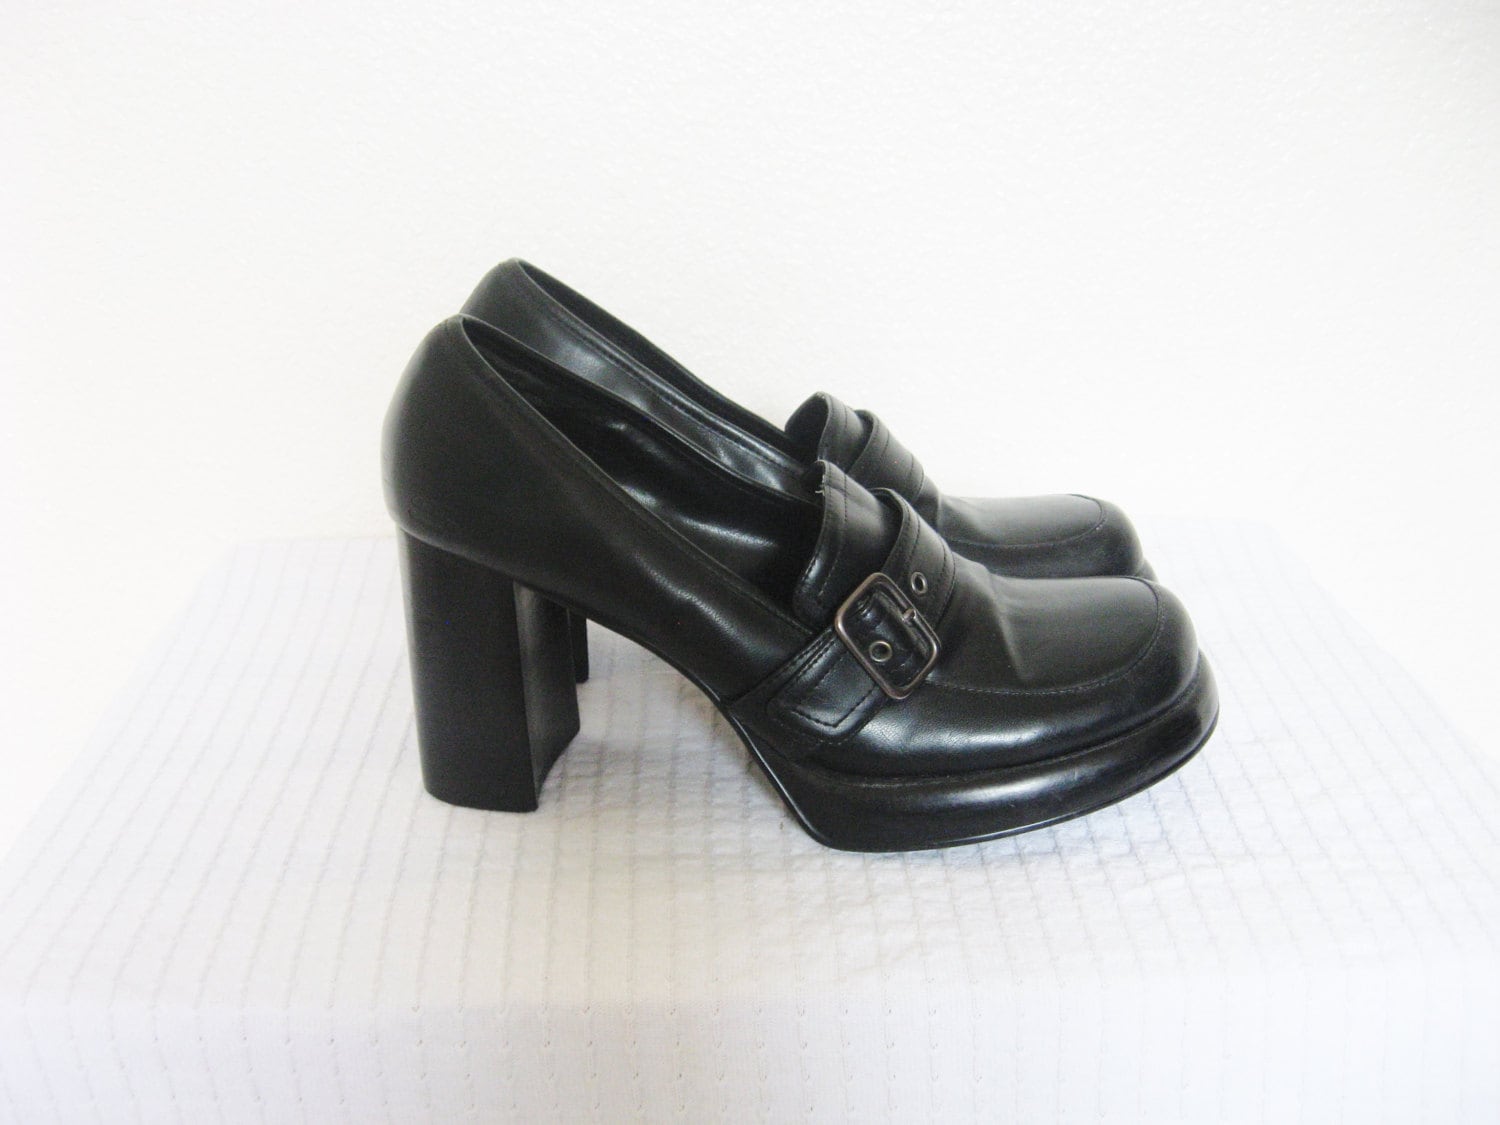 90's Platform heels / Black 90s shoes / 8.5 women's